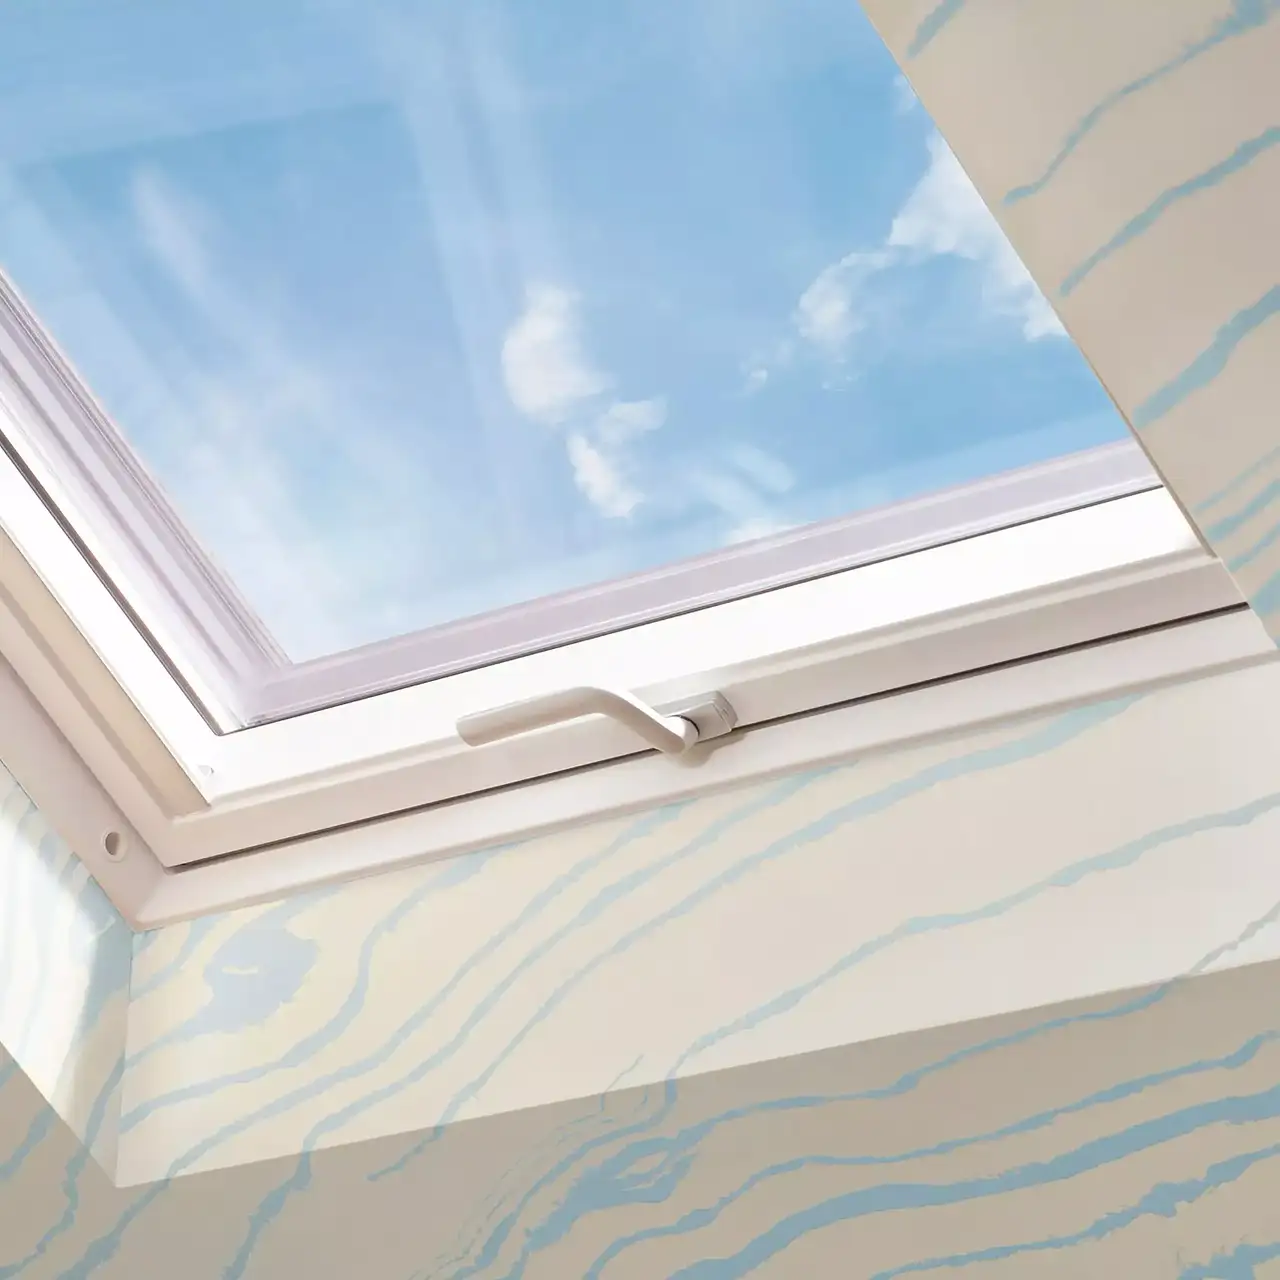 VELUX Dachflächenfenster an schräger Decke mit Aussicht auf blauen Himmel und Wolken.